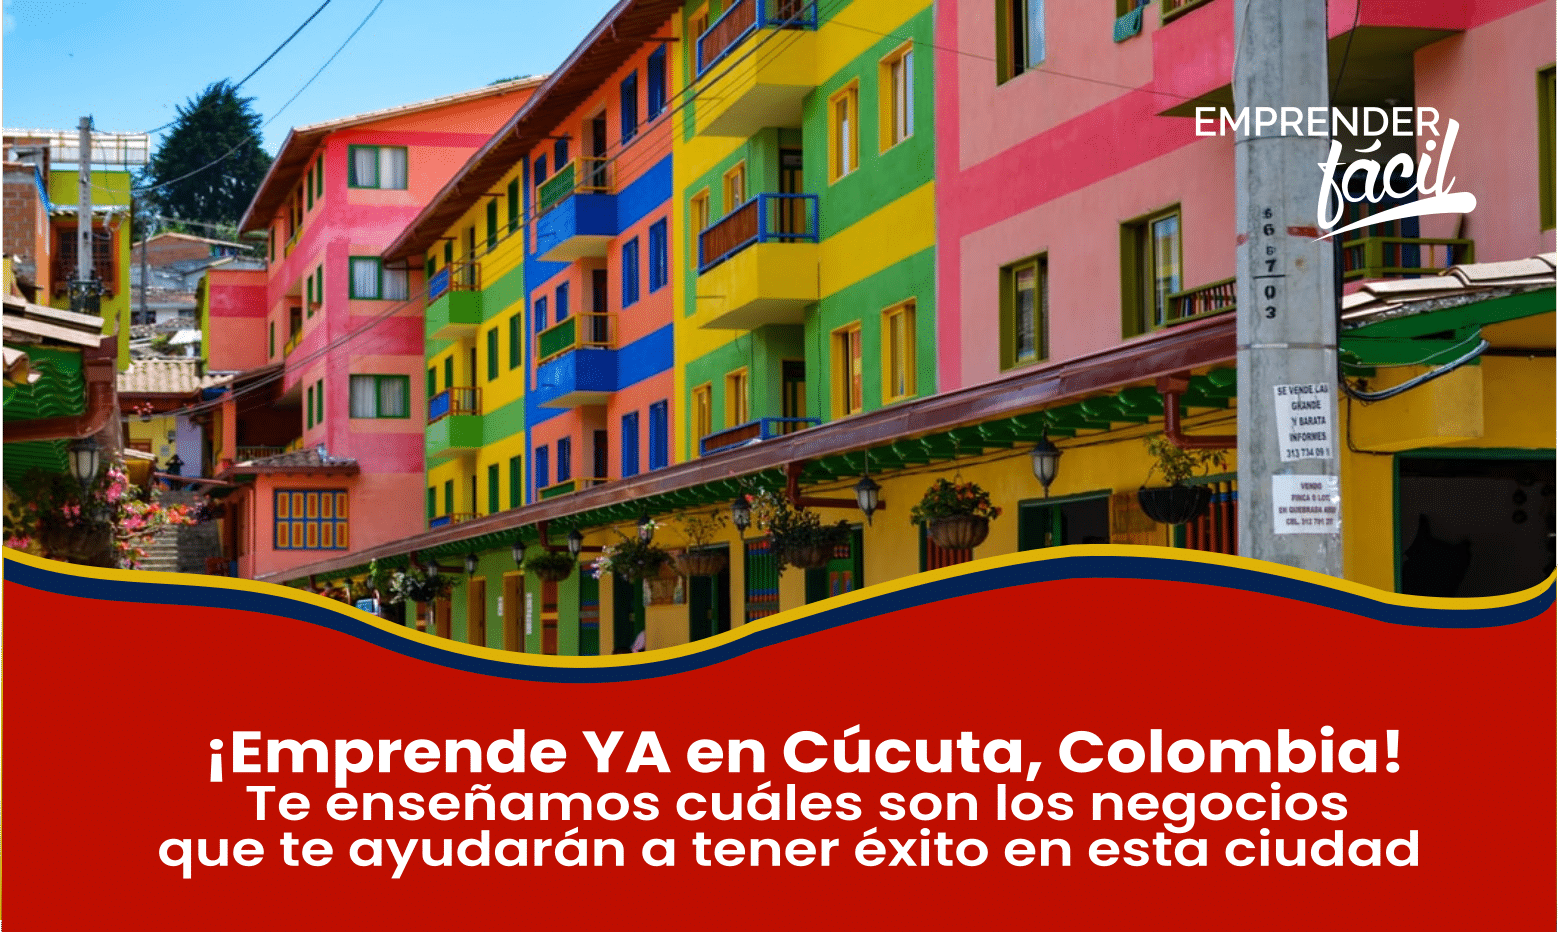 Negocios Rentables en Cúcuta, Colombia ¡Éxito Seguro!